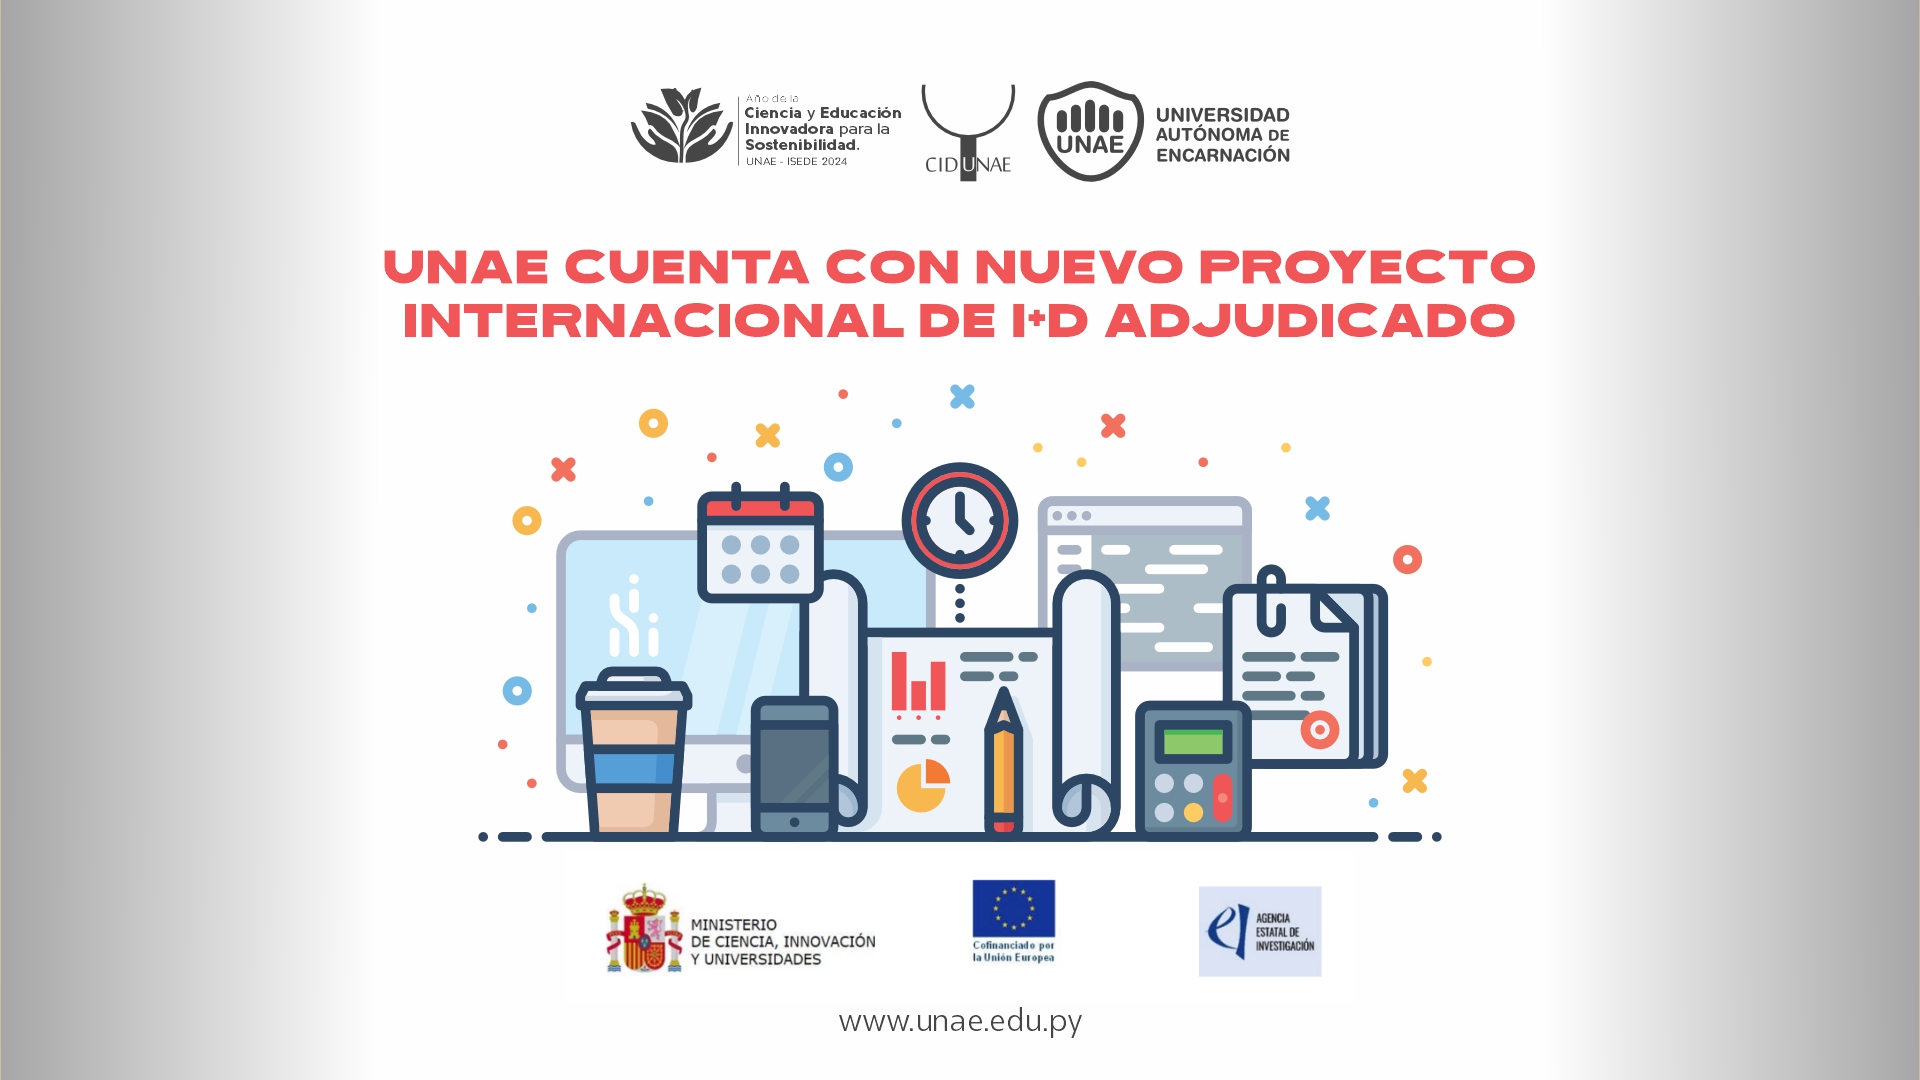 UNAE cuenta con nuevo proyecto internacional de I+D adjudicado